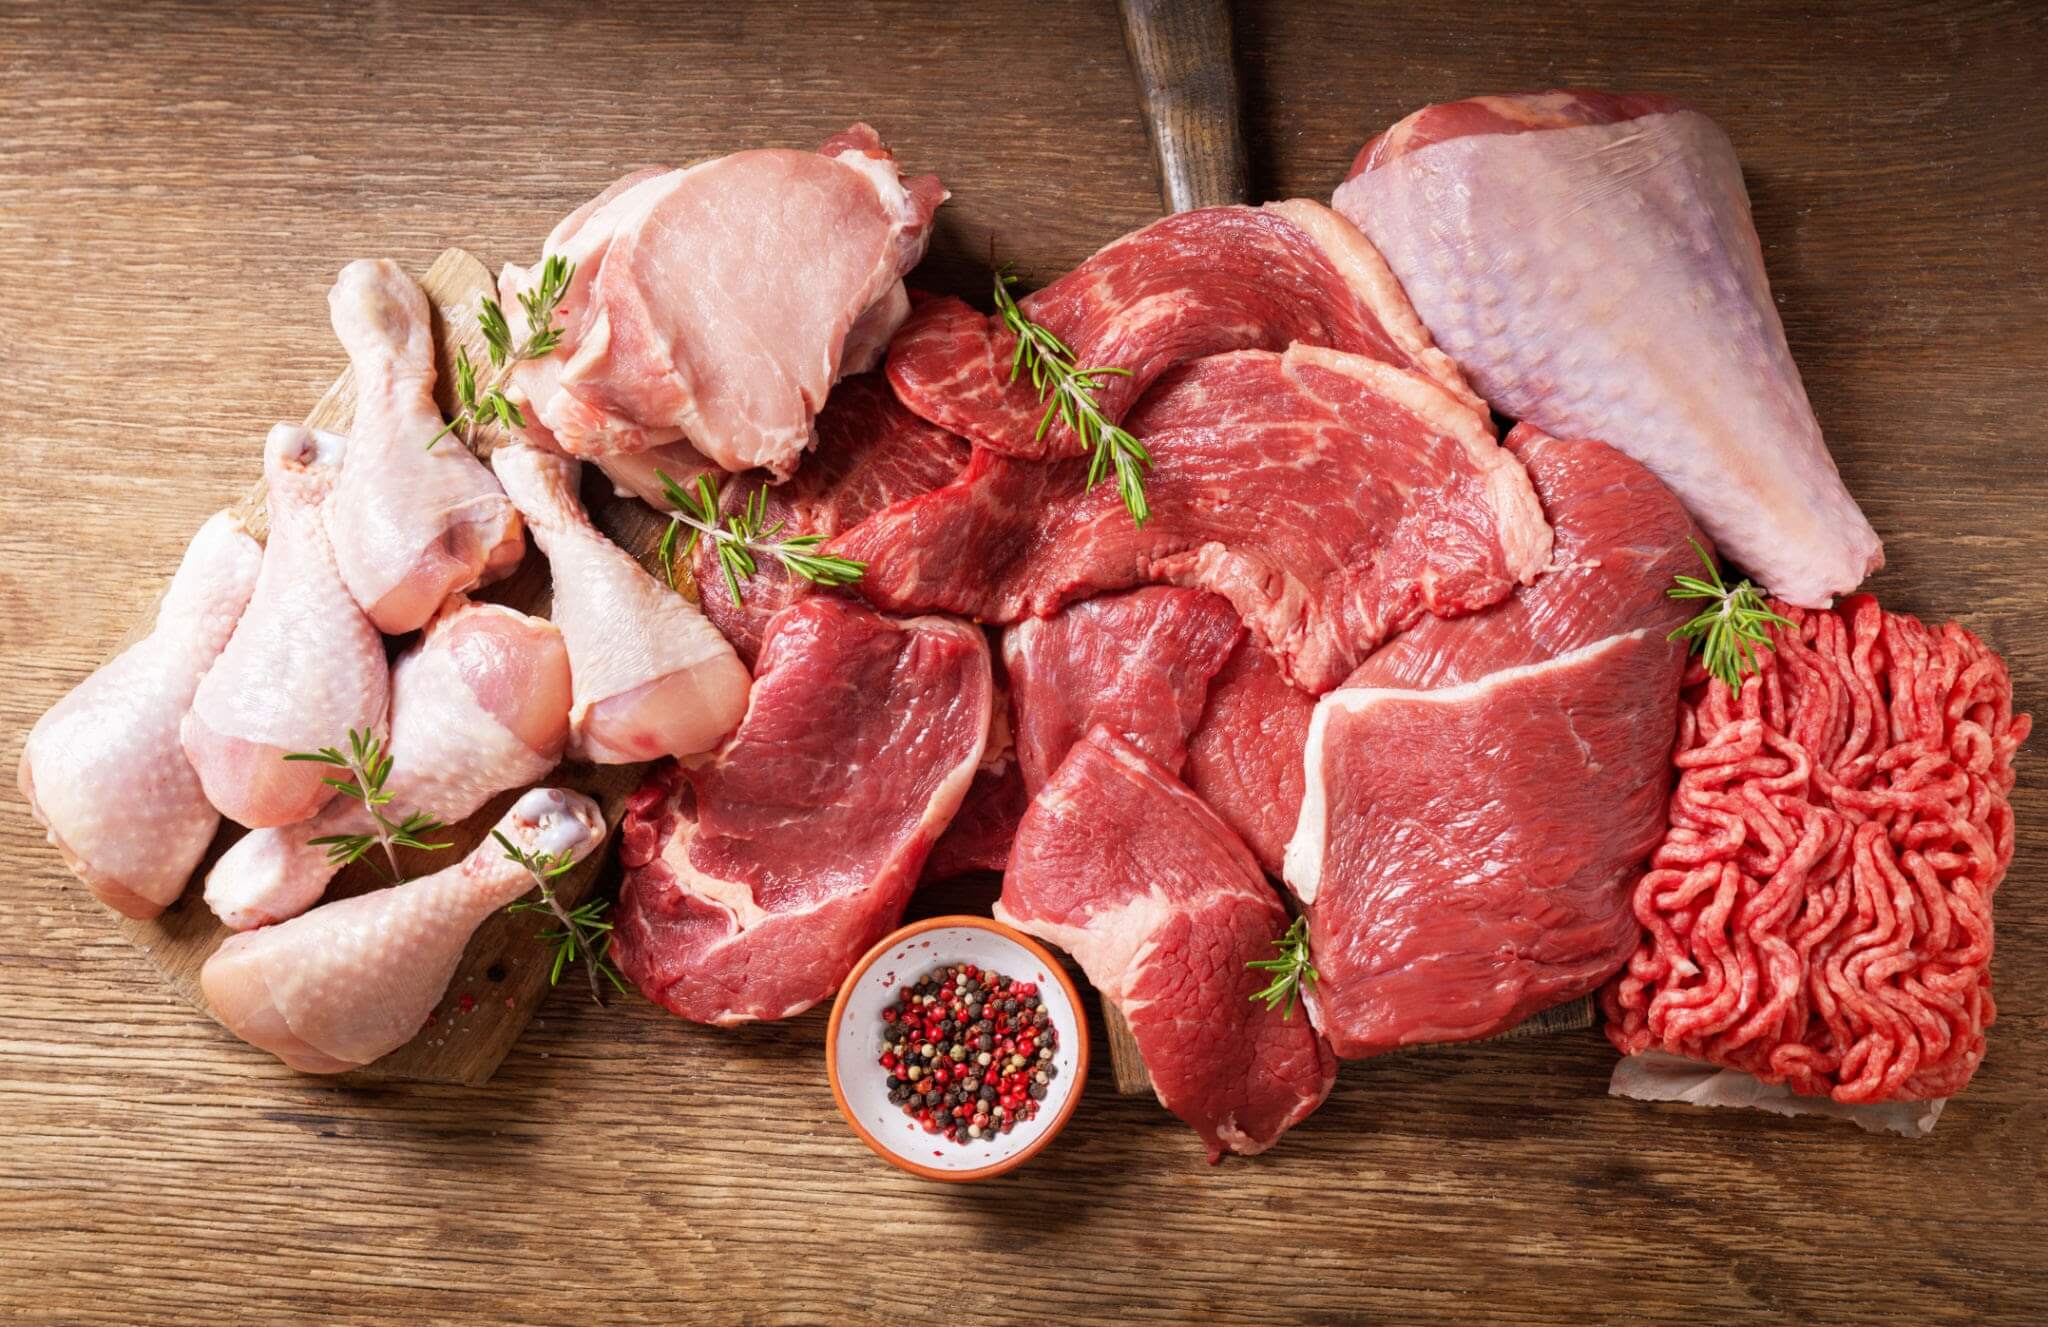 Τα οφέλη του κρέατος στην διατροφή: Μία ισορροπημένη προσέγγιση